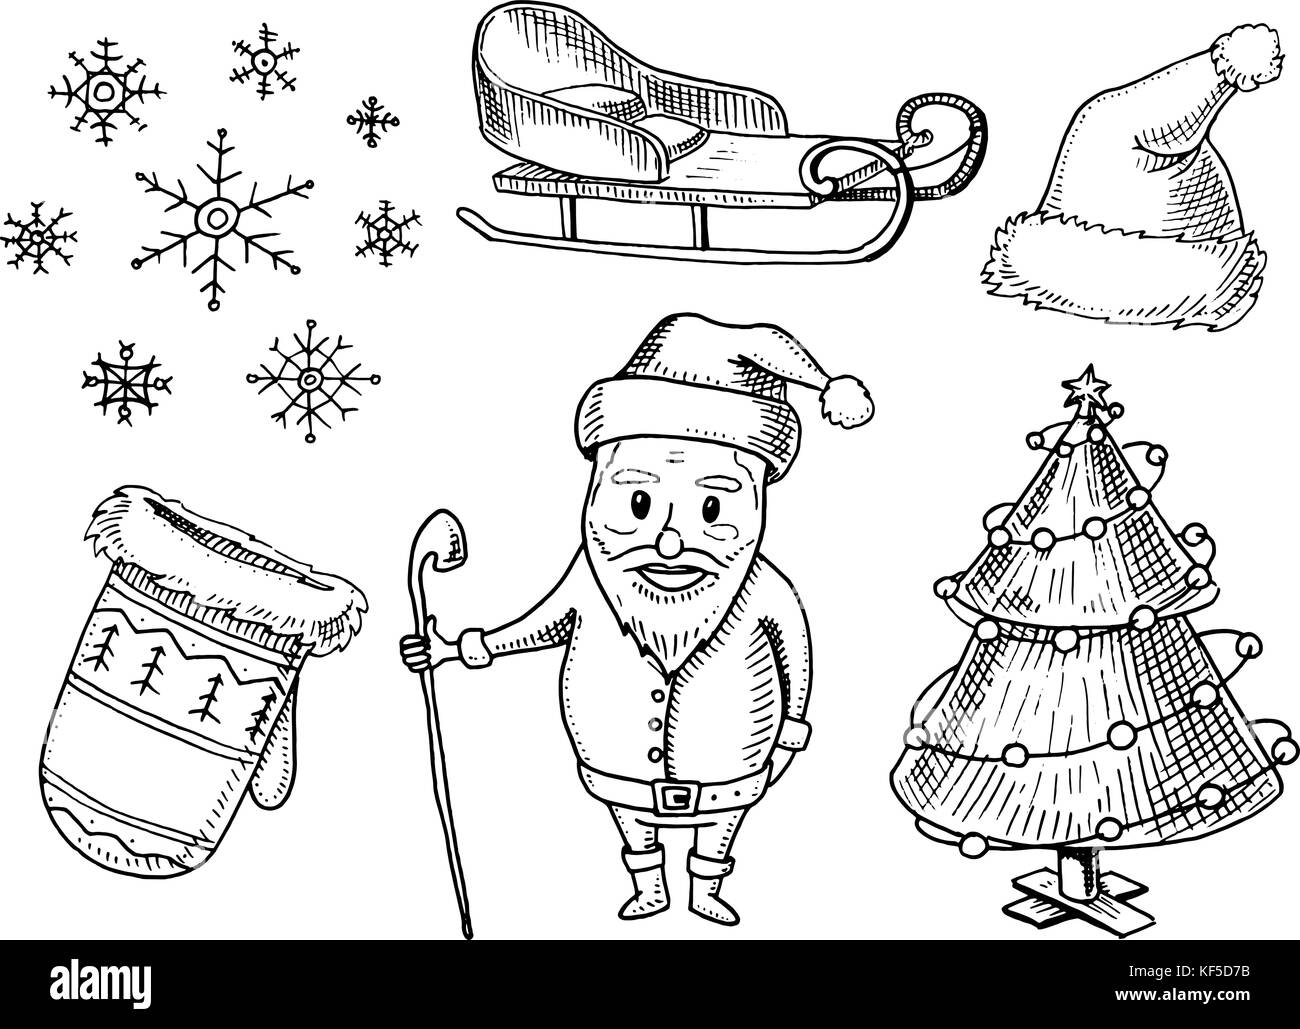 Incisi disegnati a mano nel vecchio disegno e stile vintage per etichetta. Buon Natale o il Natale e Anno Nuovo collezione. vacanza invernale decorazione. i fiocchi di neve e con la slitta, cappello e muffole, albero e Babbo Natale. Illustrazione Vettoriale